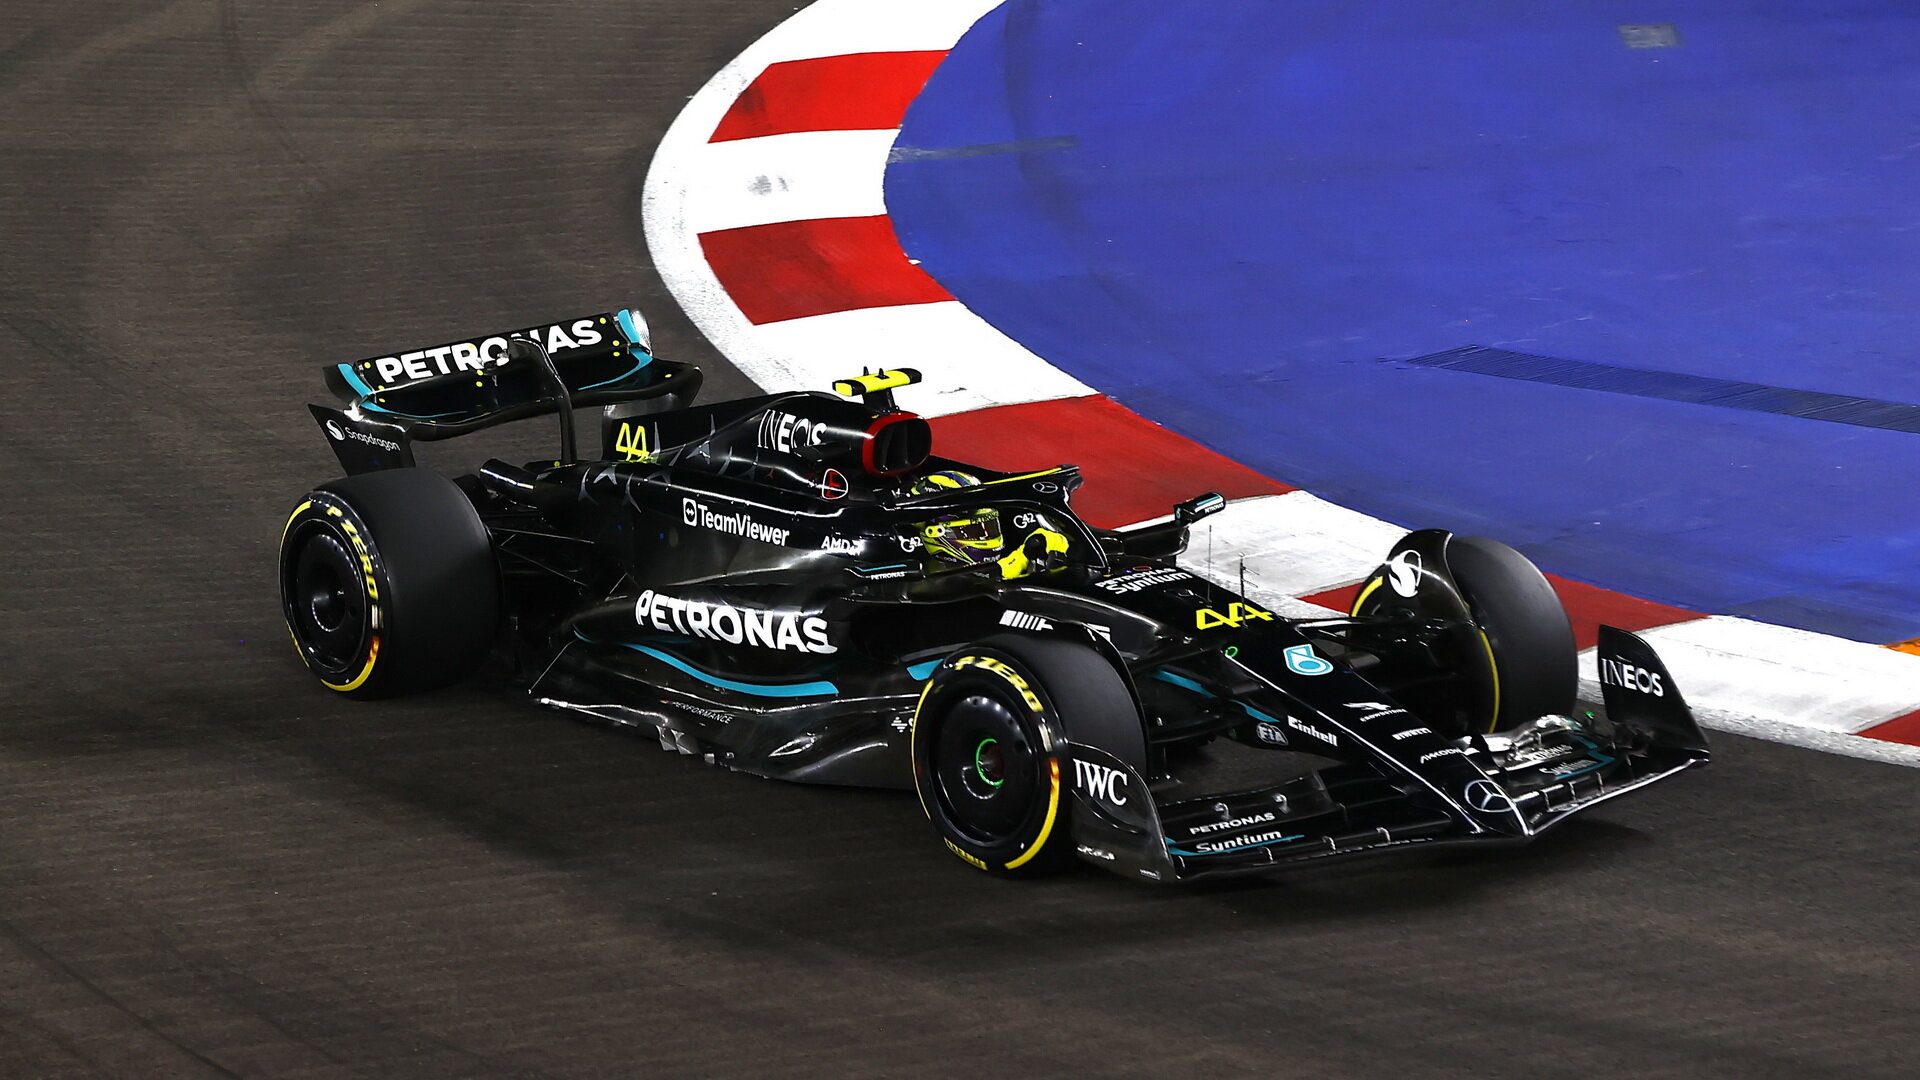 Lewis Hamilton v Kataru špatně odhadl nájezd do první zatáčky a narazil do svého týmového kolegy Georgea Russella, za což se pak týmu omluvil